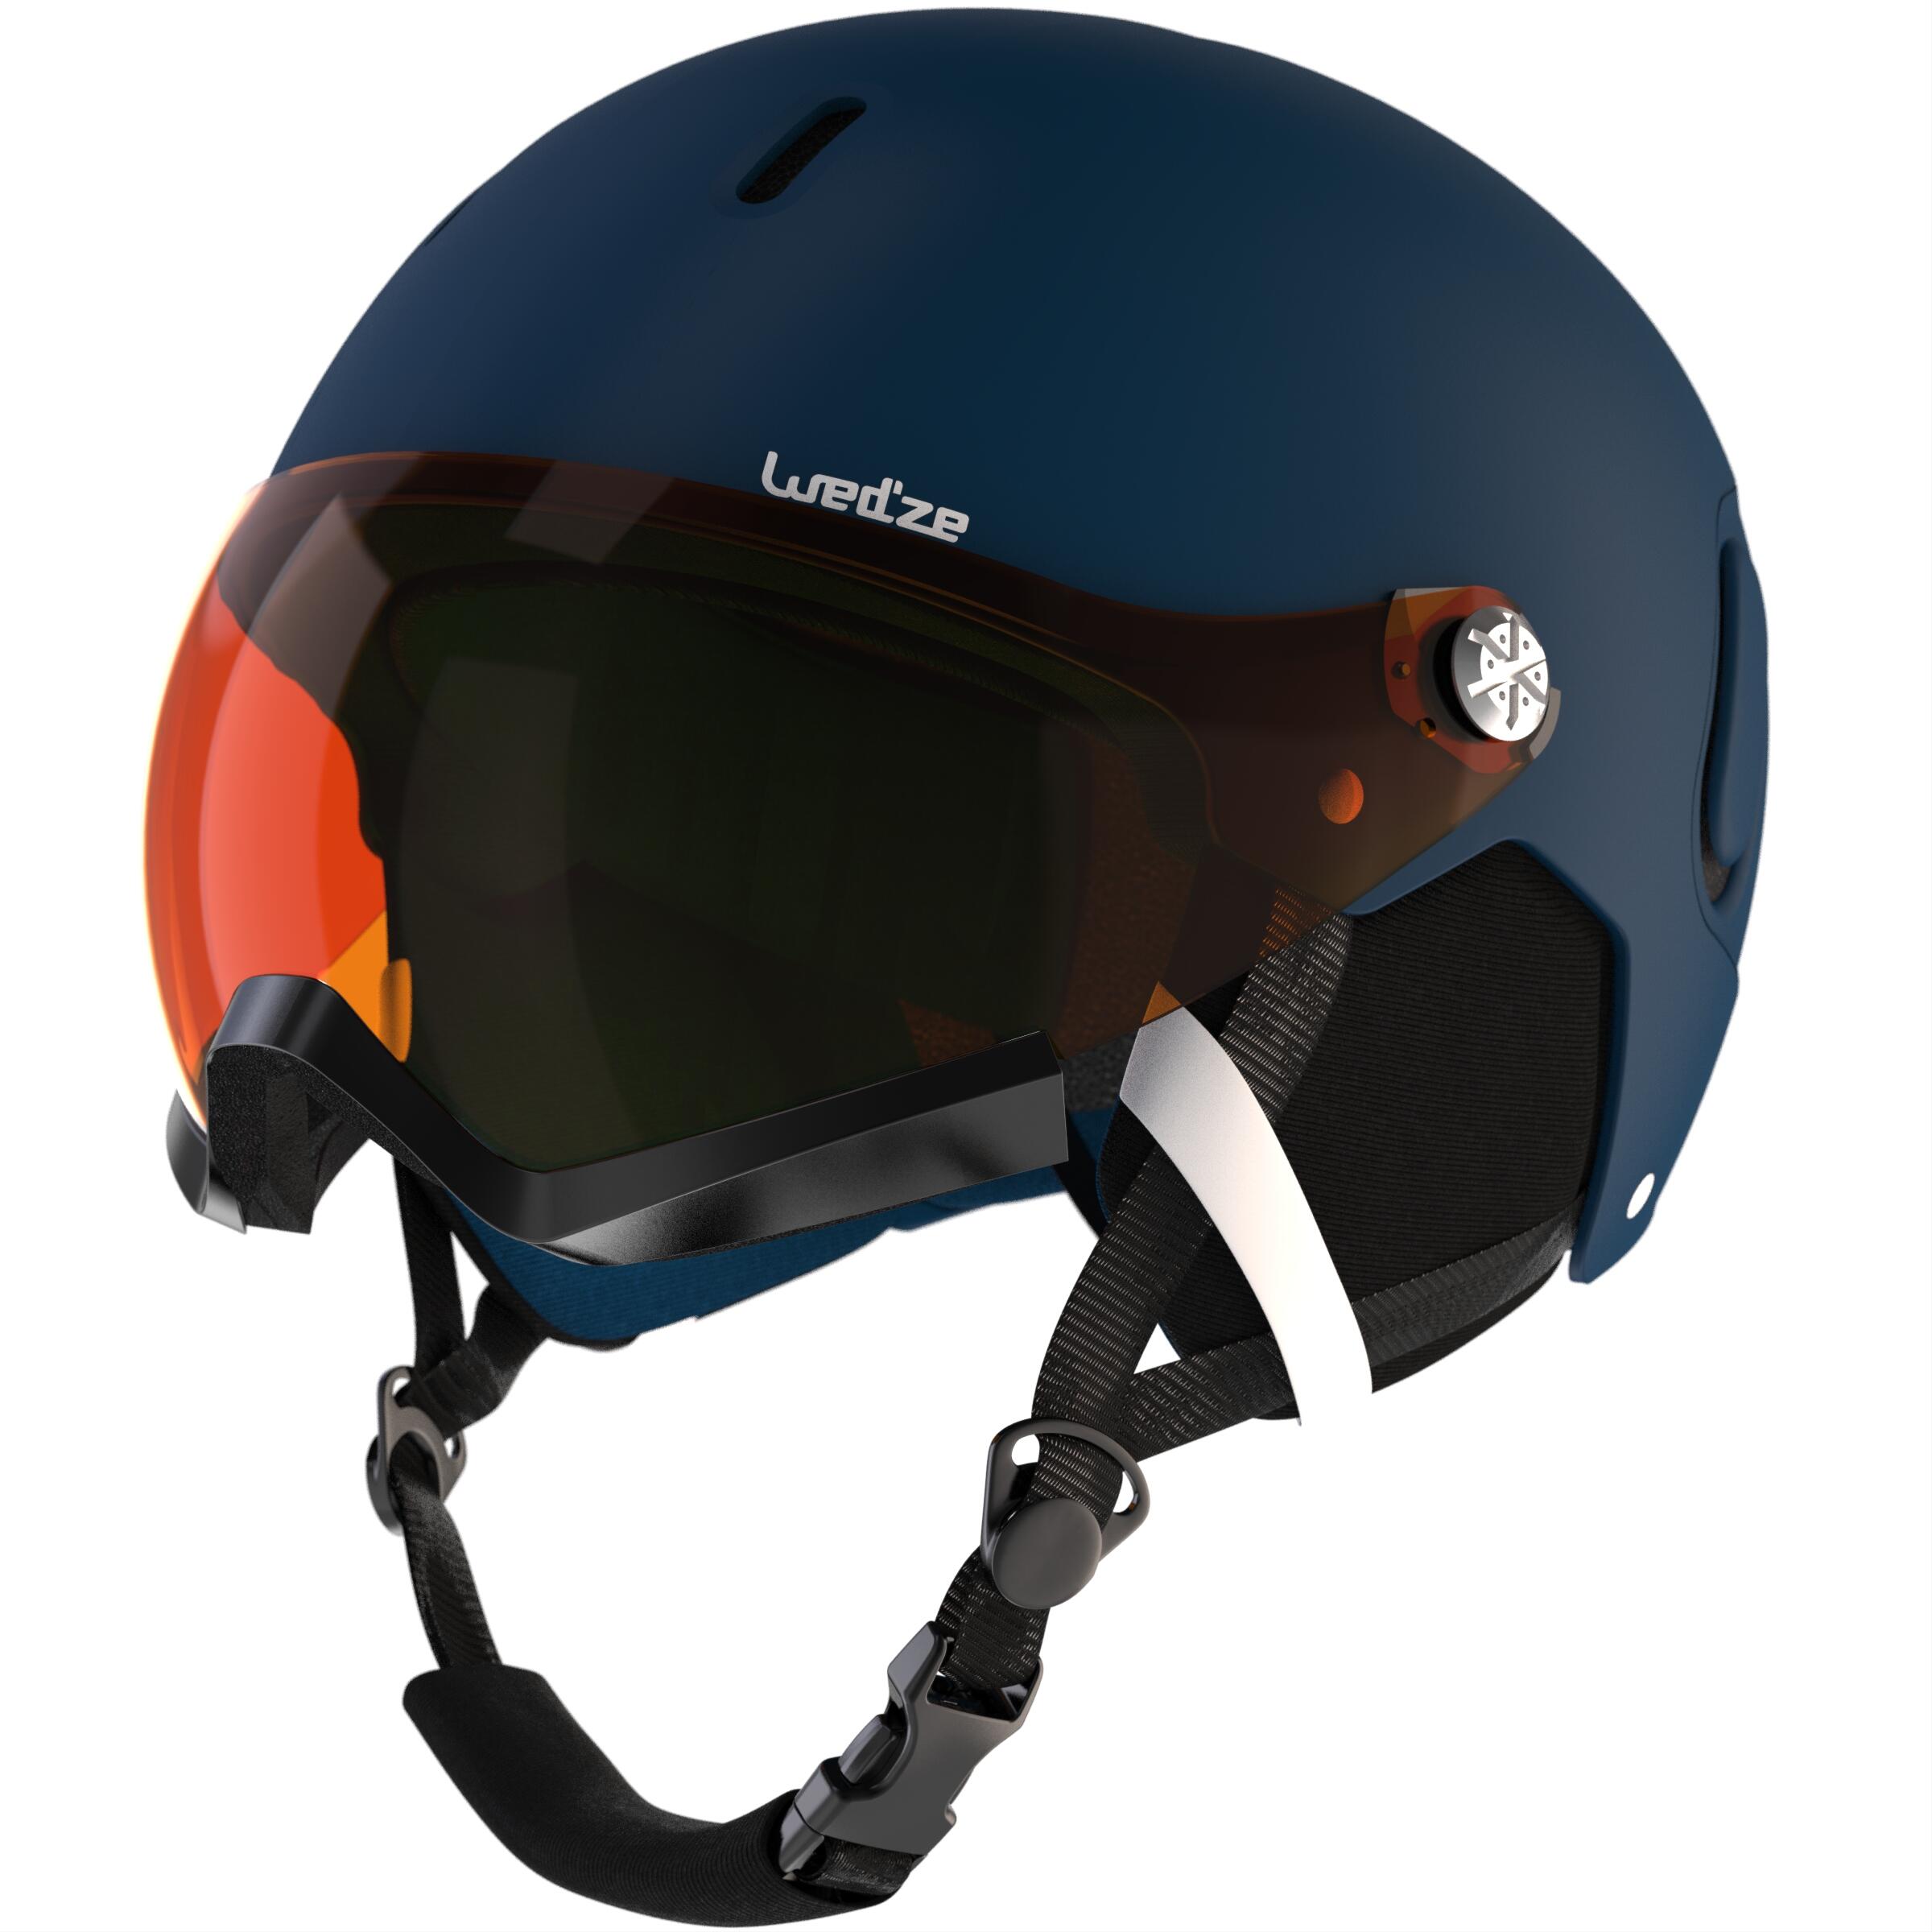 Adult Skiing Helmet Visor 4/6